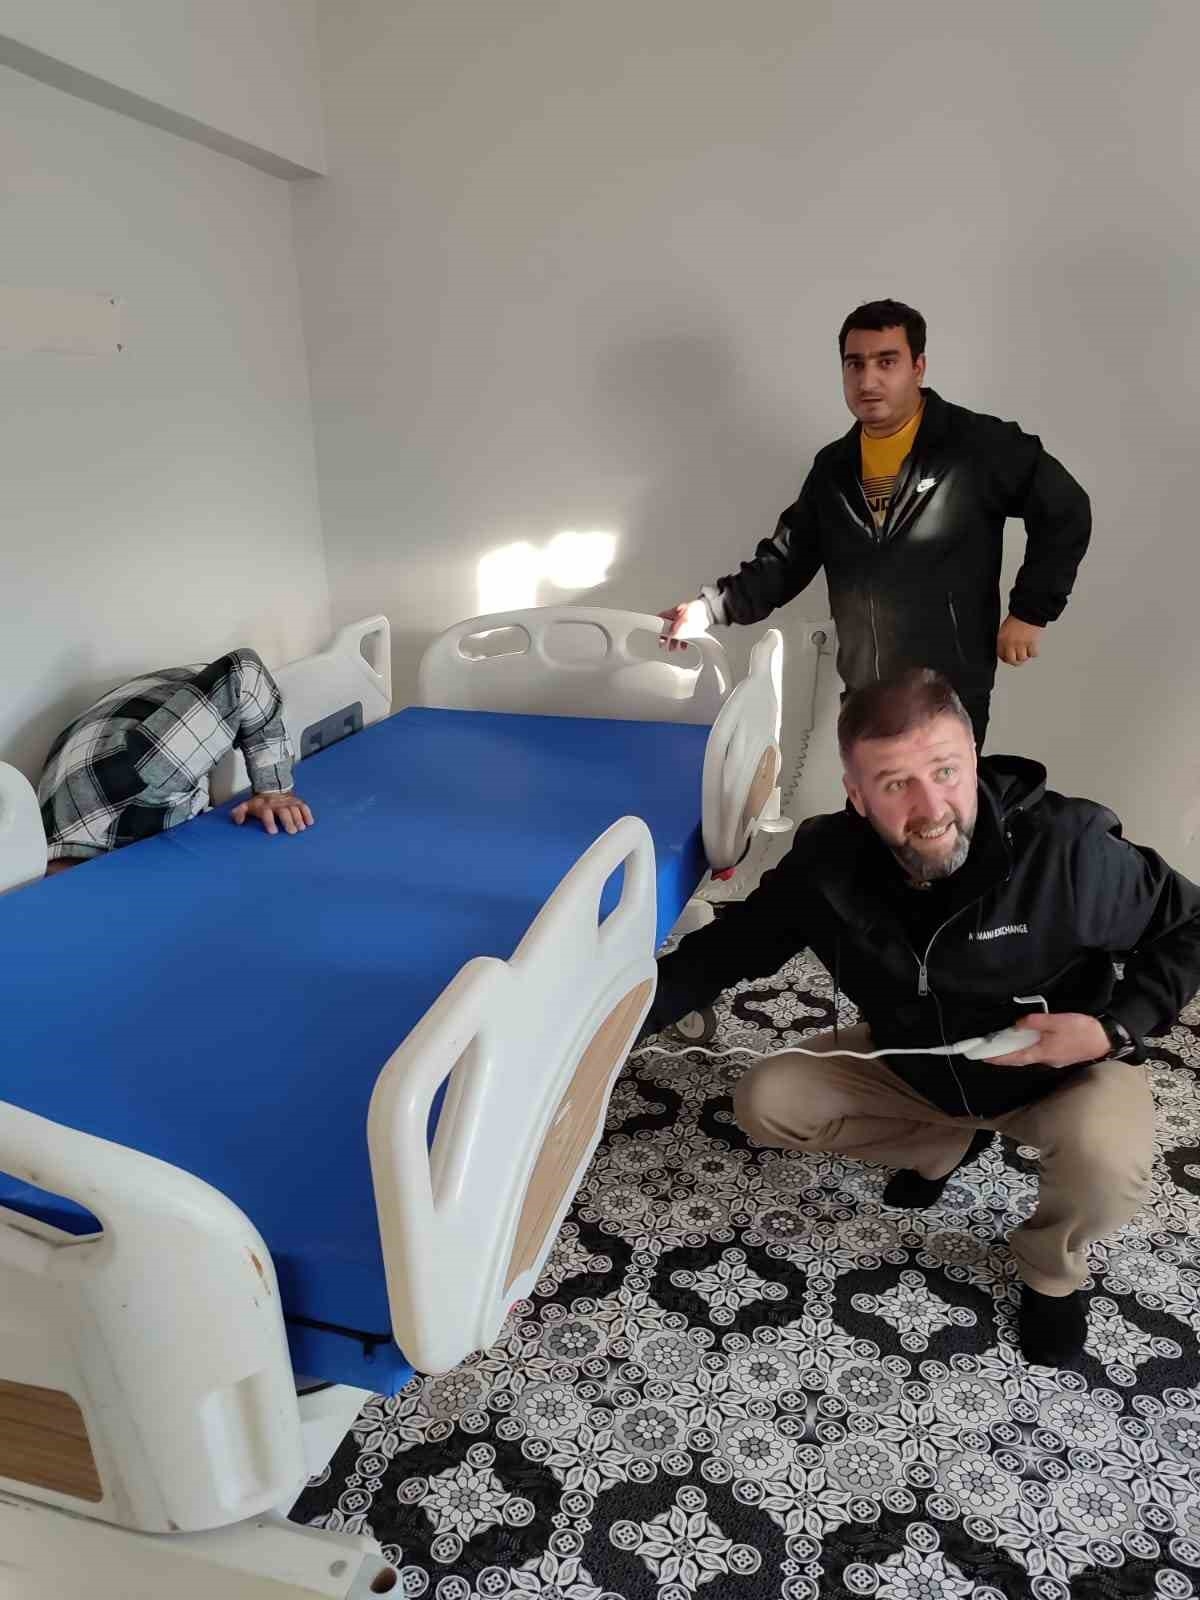 Bingöl’de yatalak hastalara ücretsiz hasta yatağı dağıtıldı
